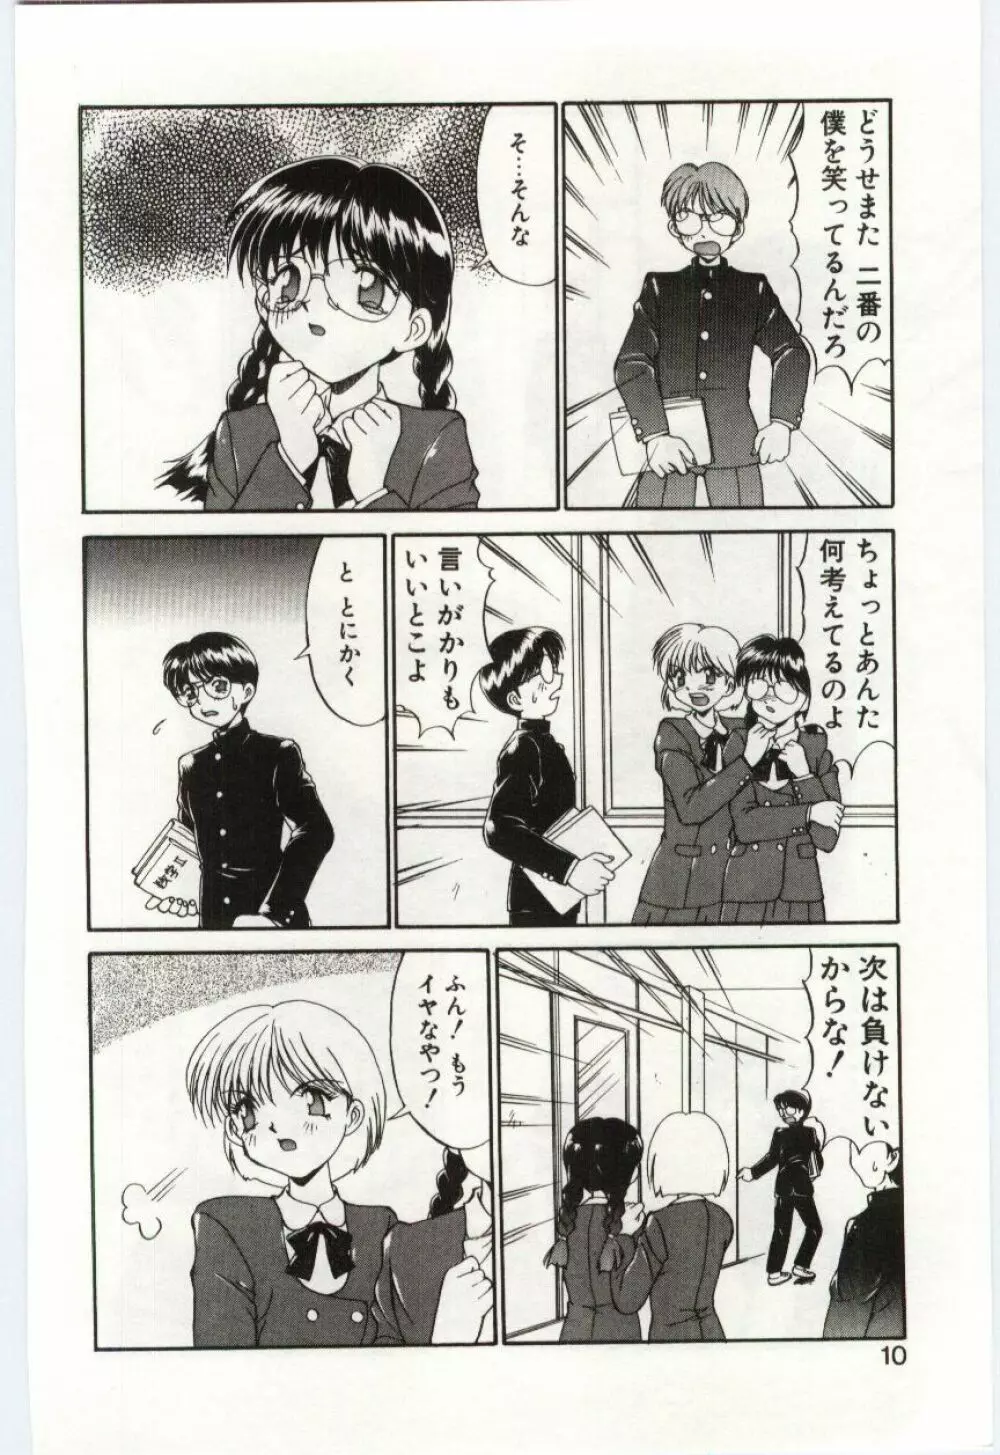 Mizugi Crisis part 1 - JP Page.9